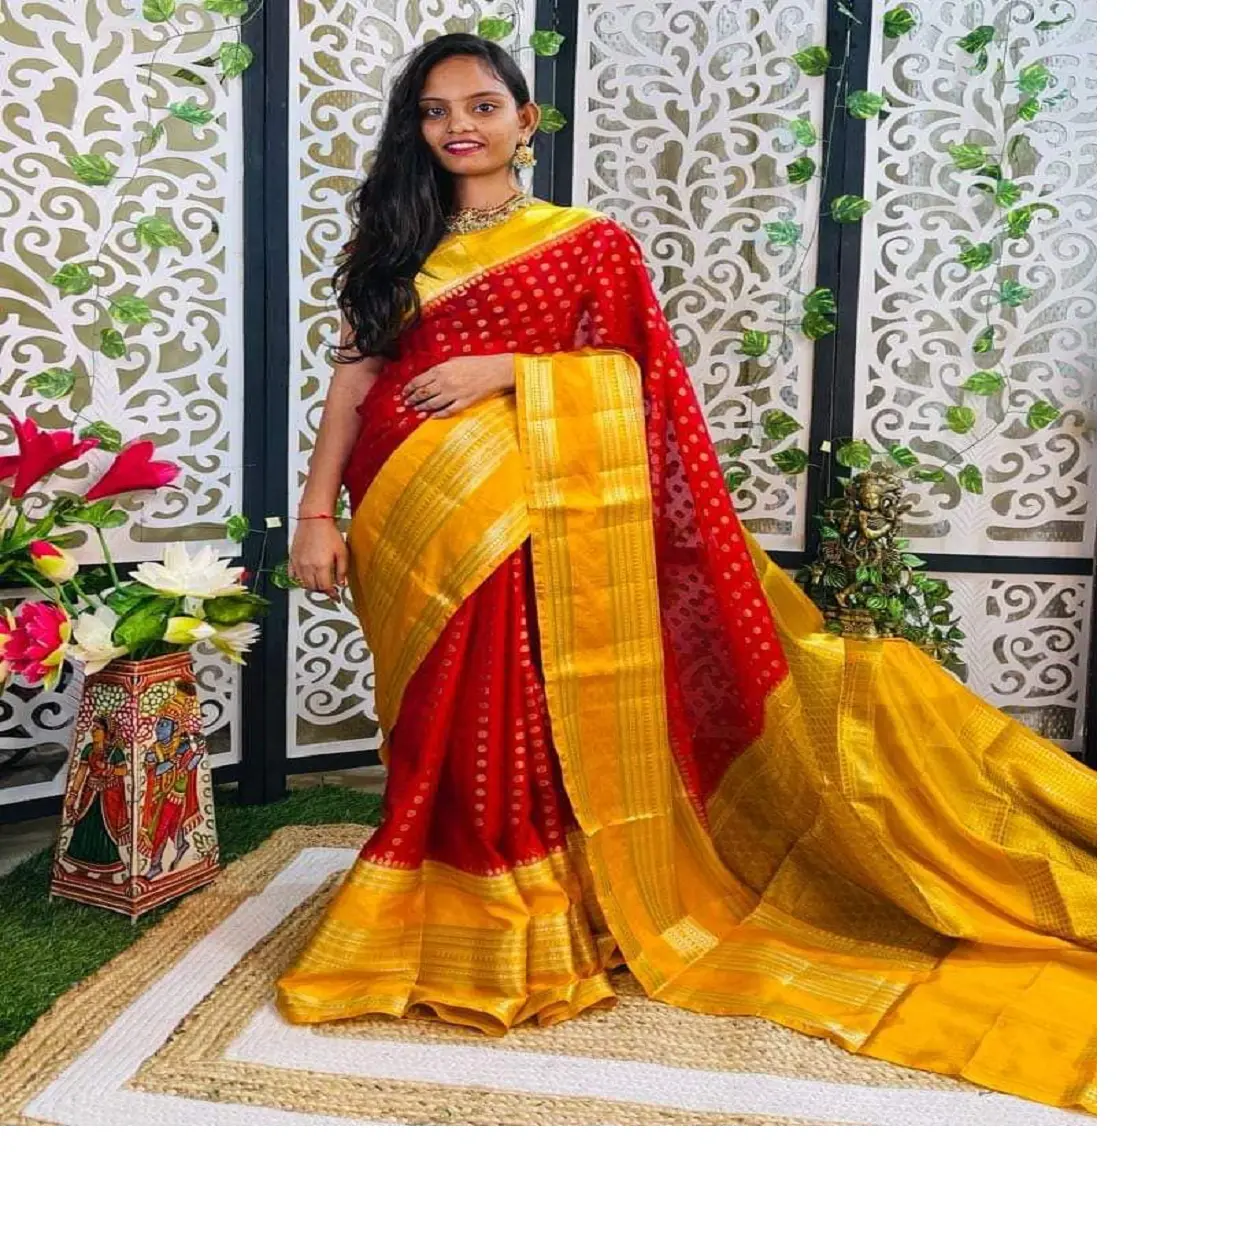 Su misura con sari di seta broccato bordo dorato in colori e bordi assortiti per negozi sari e stilisti